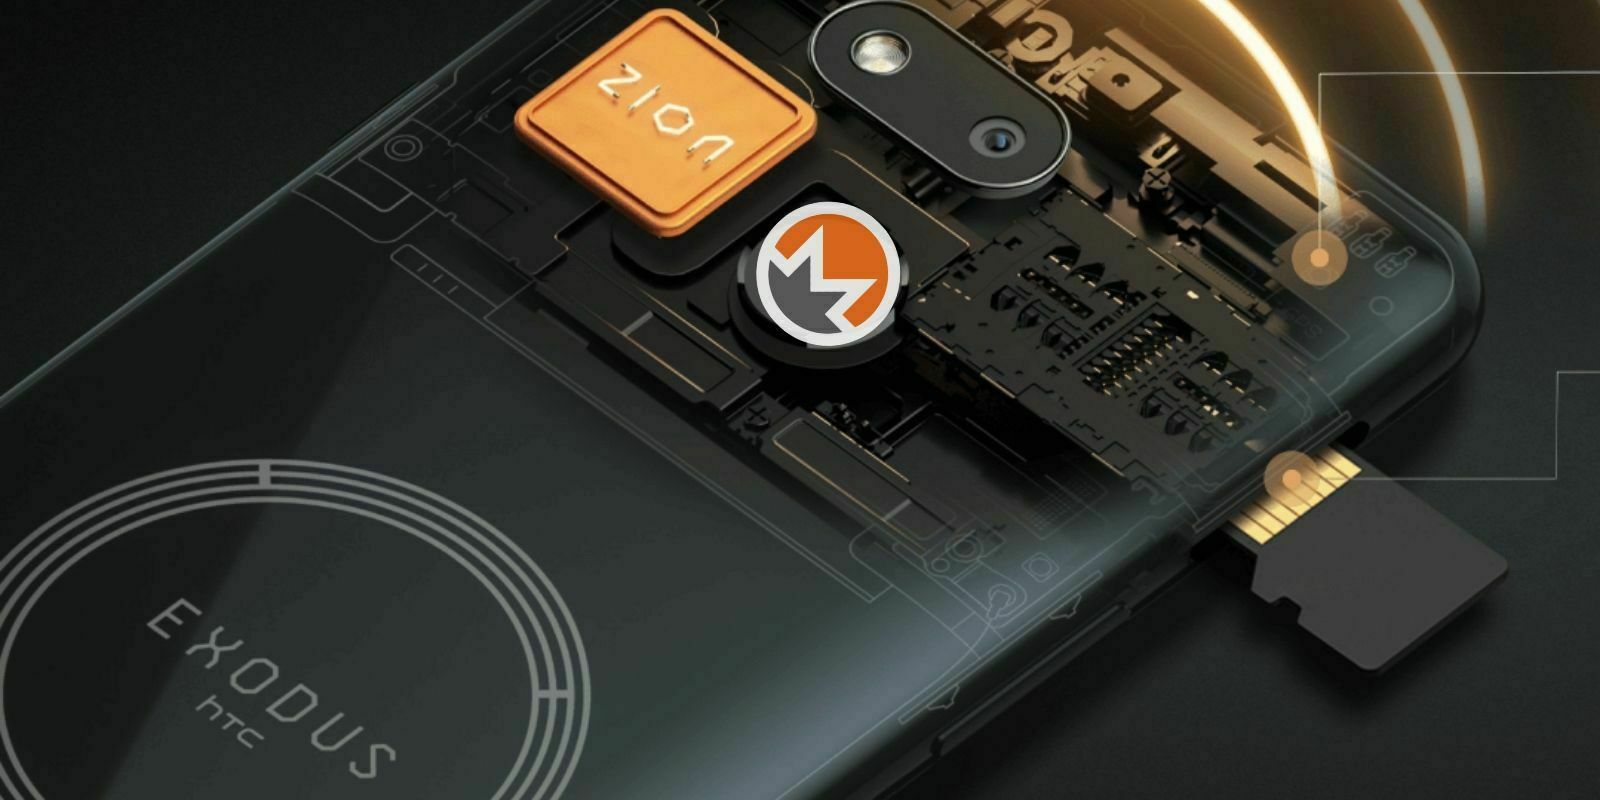 L'Exodus 1s de HTC pourra bientôt miner du Monero (XMR)